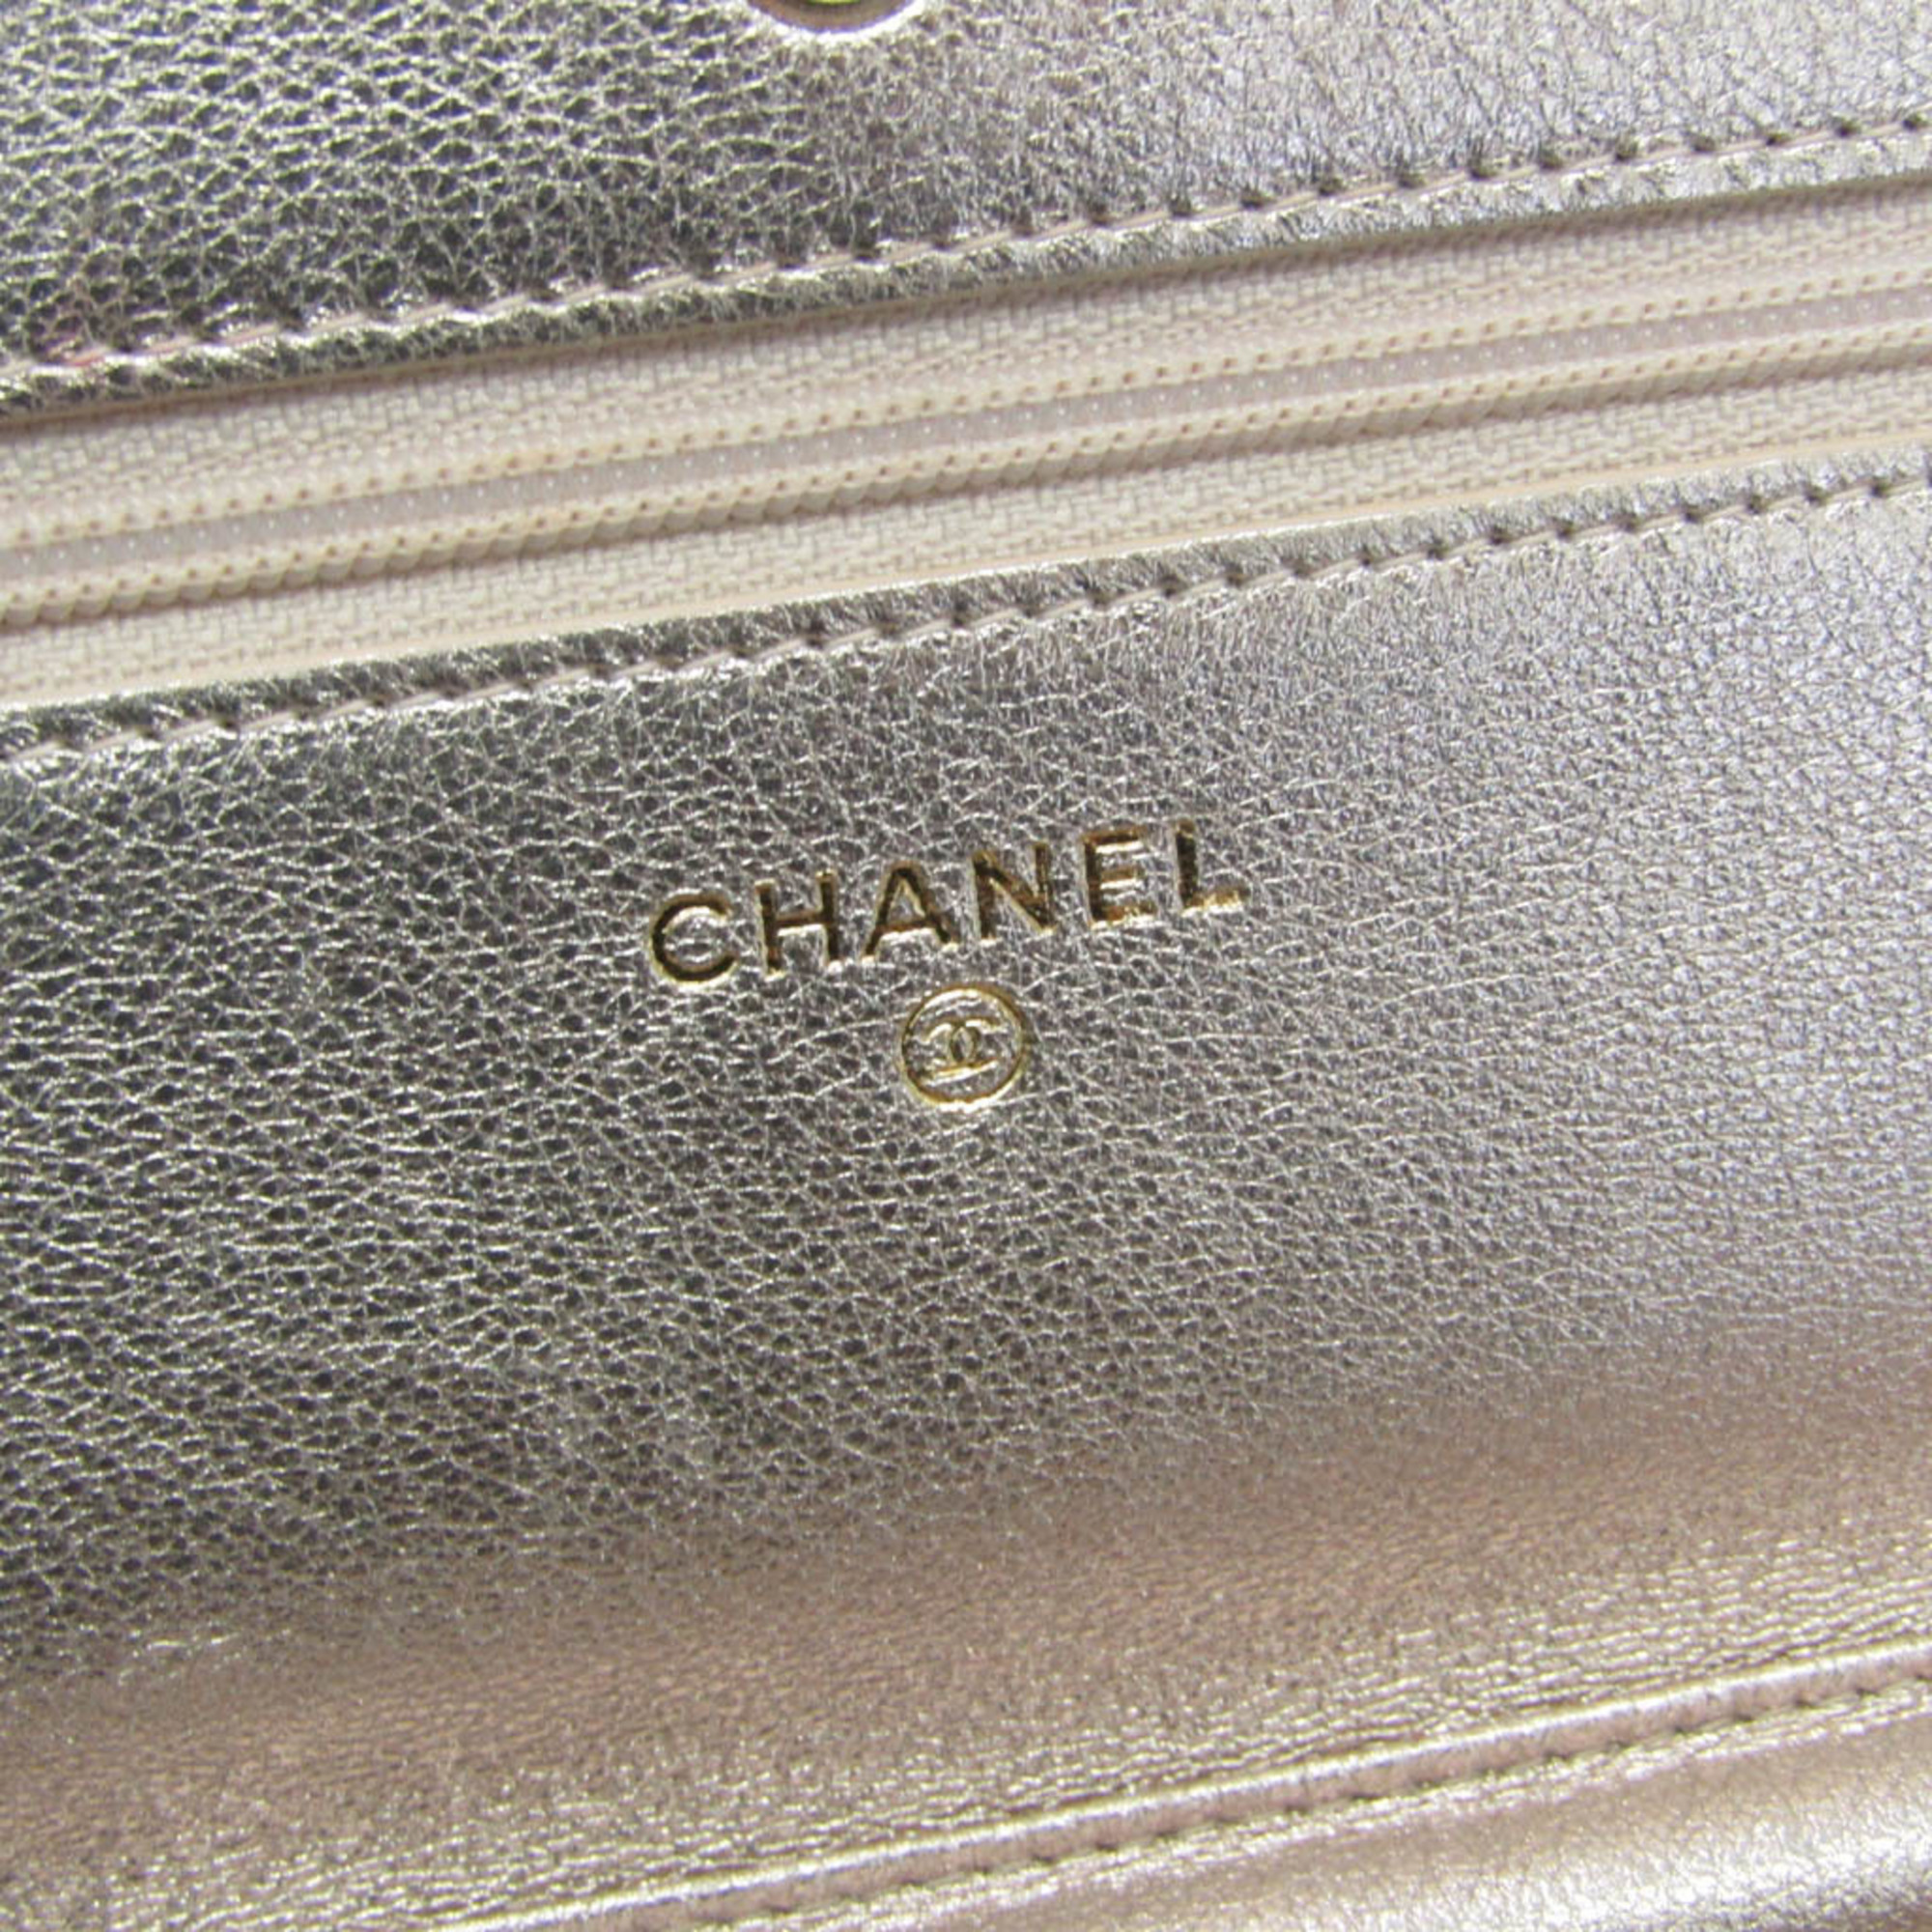 シャネル(Chanel) マトラッセ A33814 レディース  パンチングレザー チェーン/ショルダーウォレット ピンクゴールド(PG)